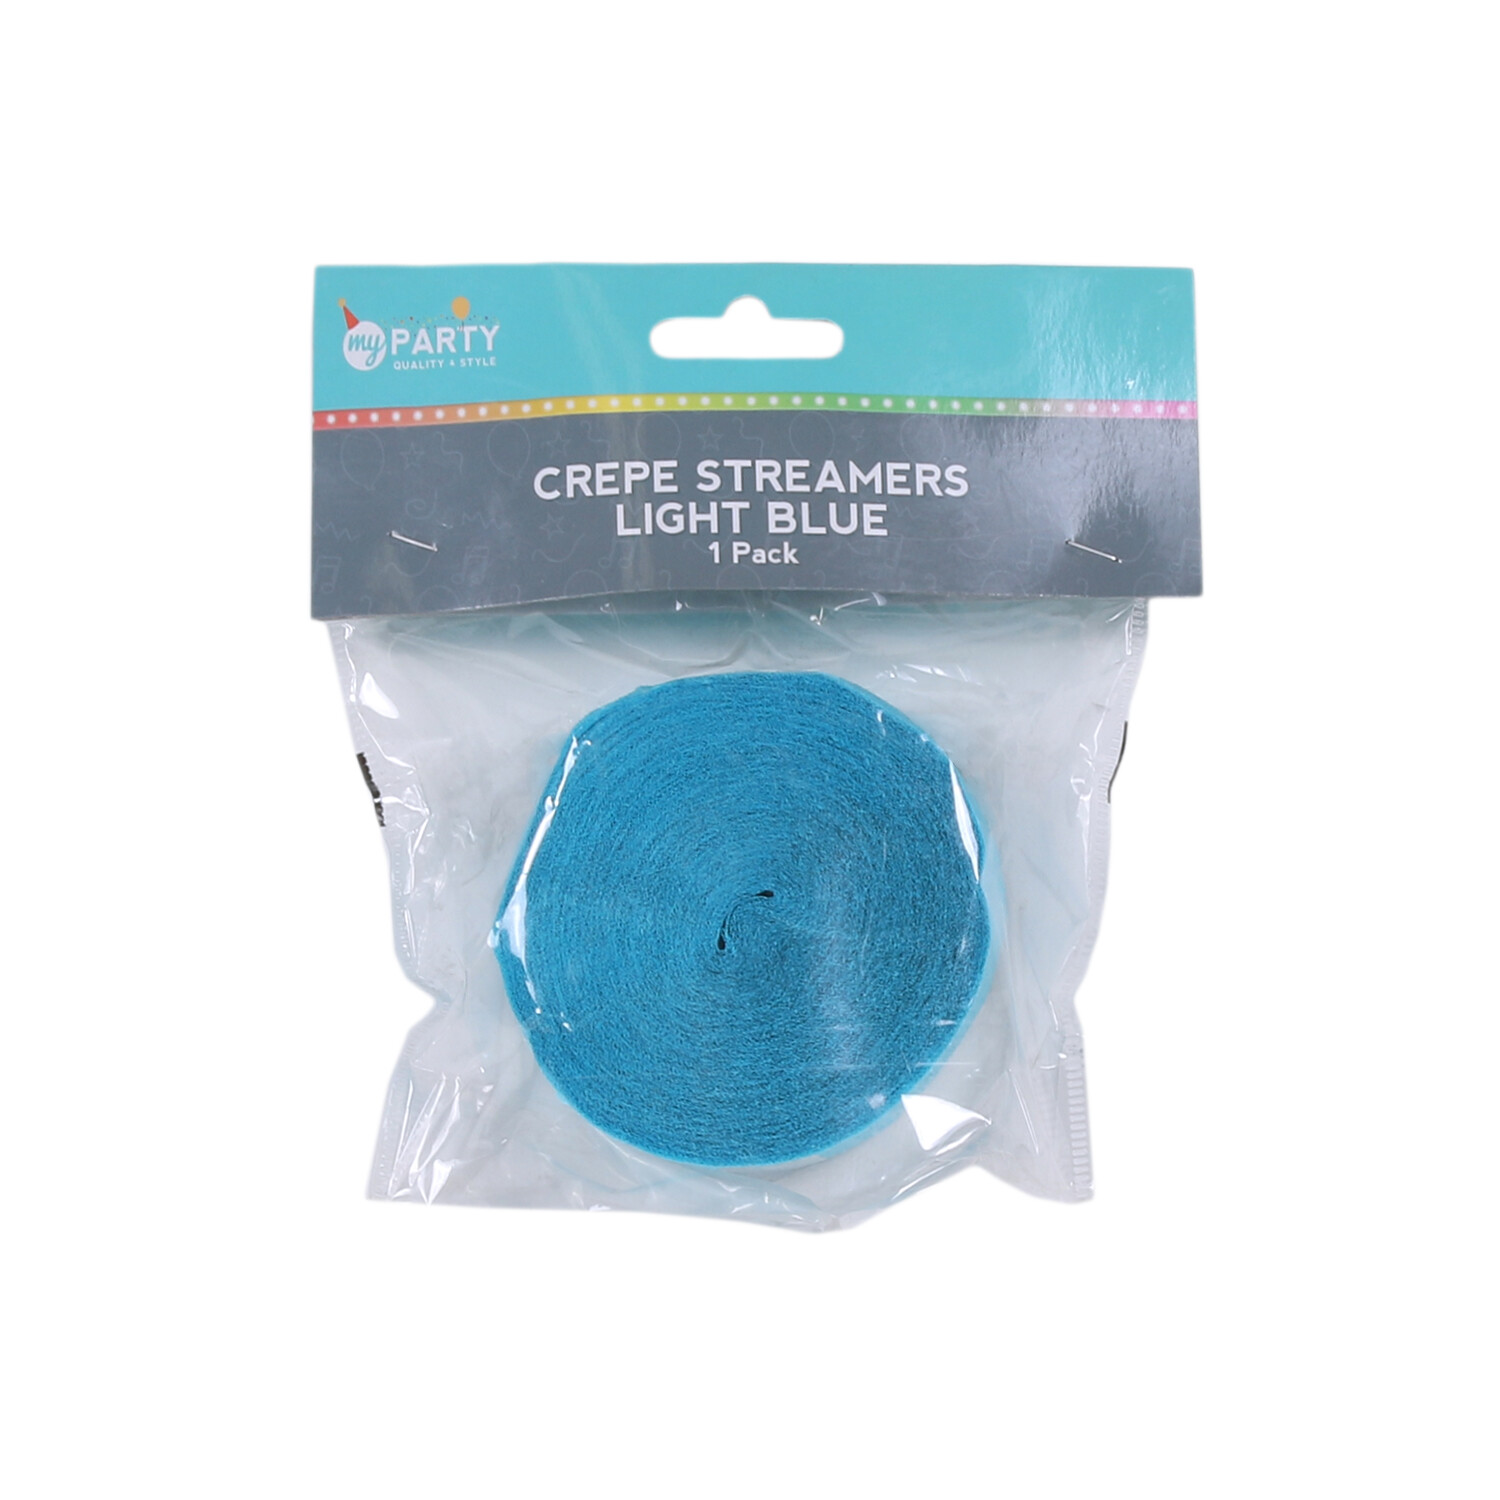 Crepe Streamer Roll - Light Blue Image